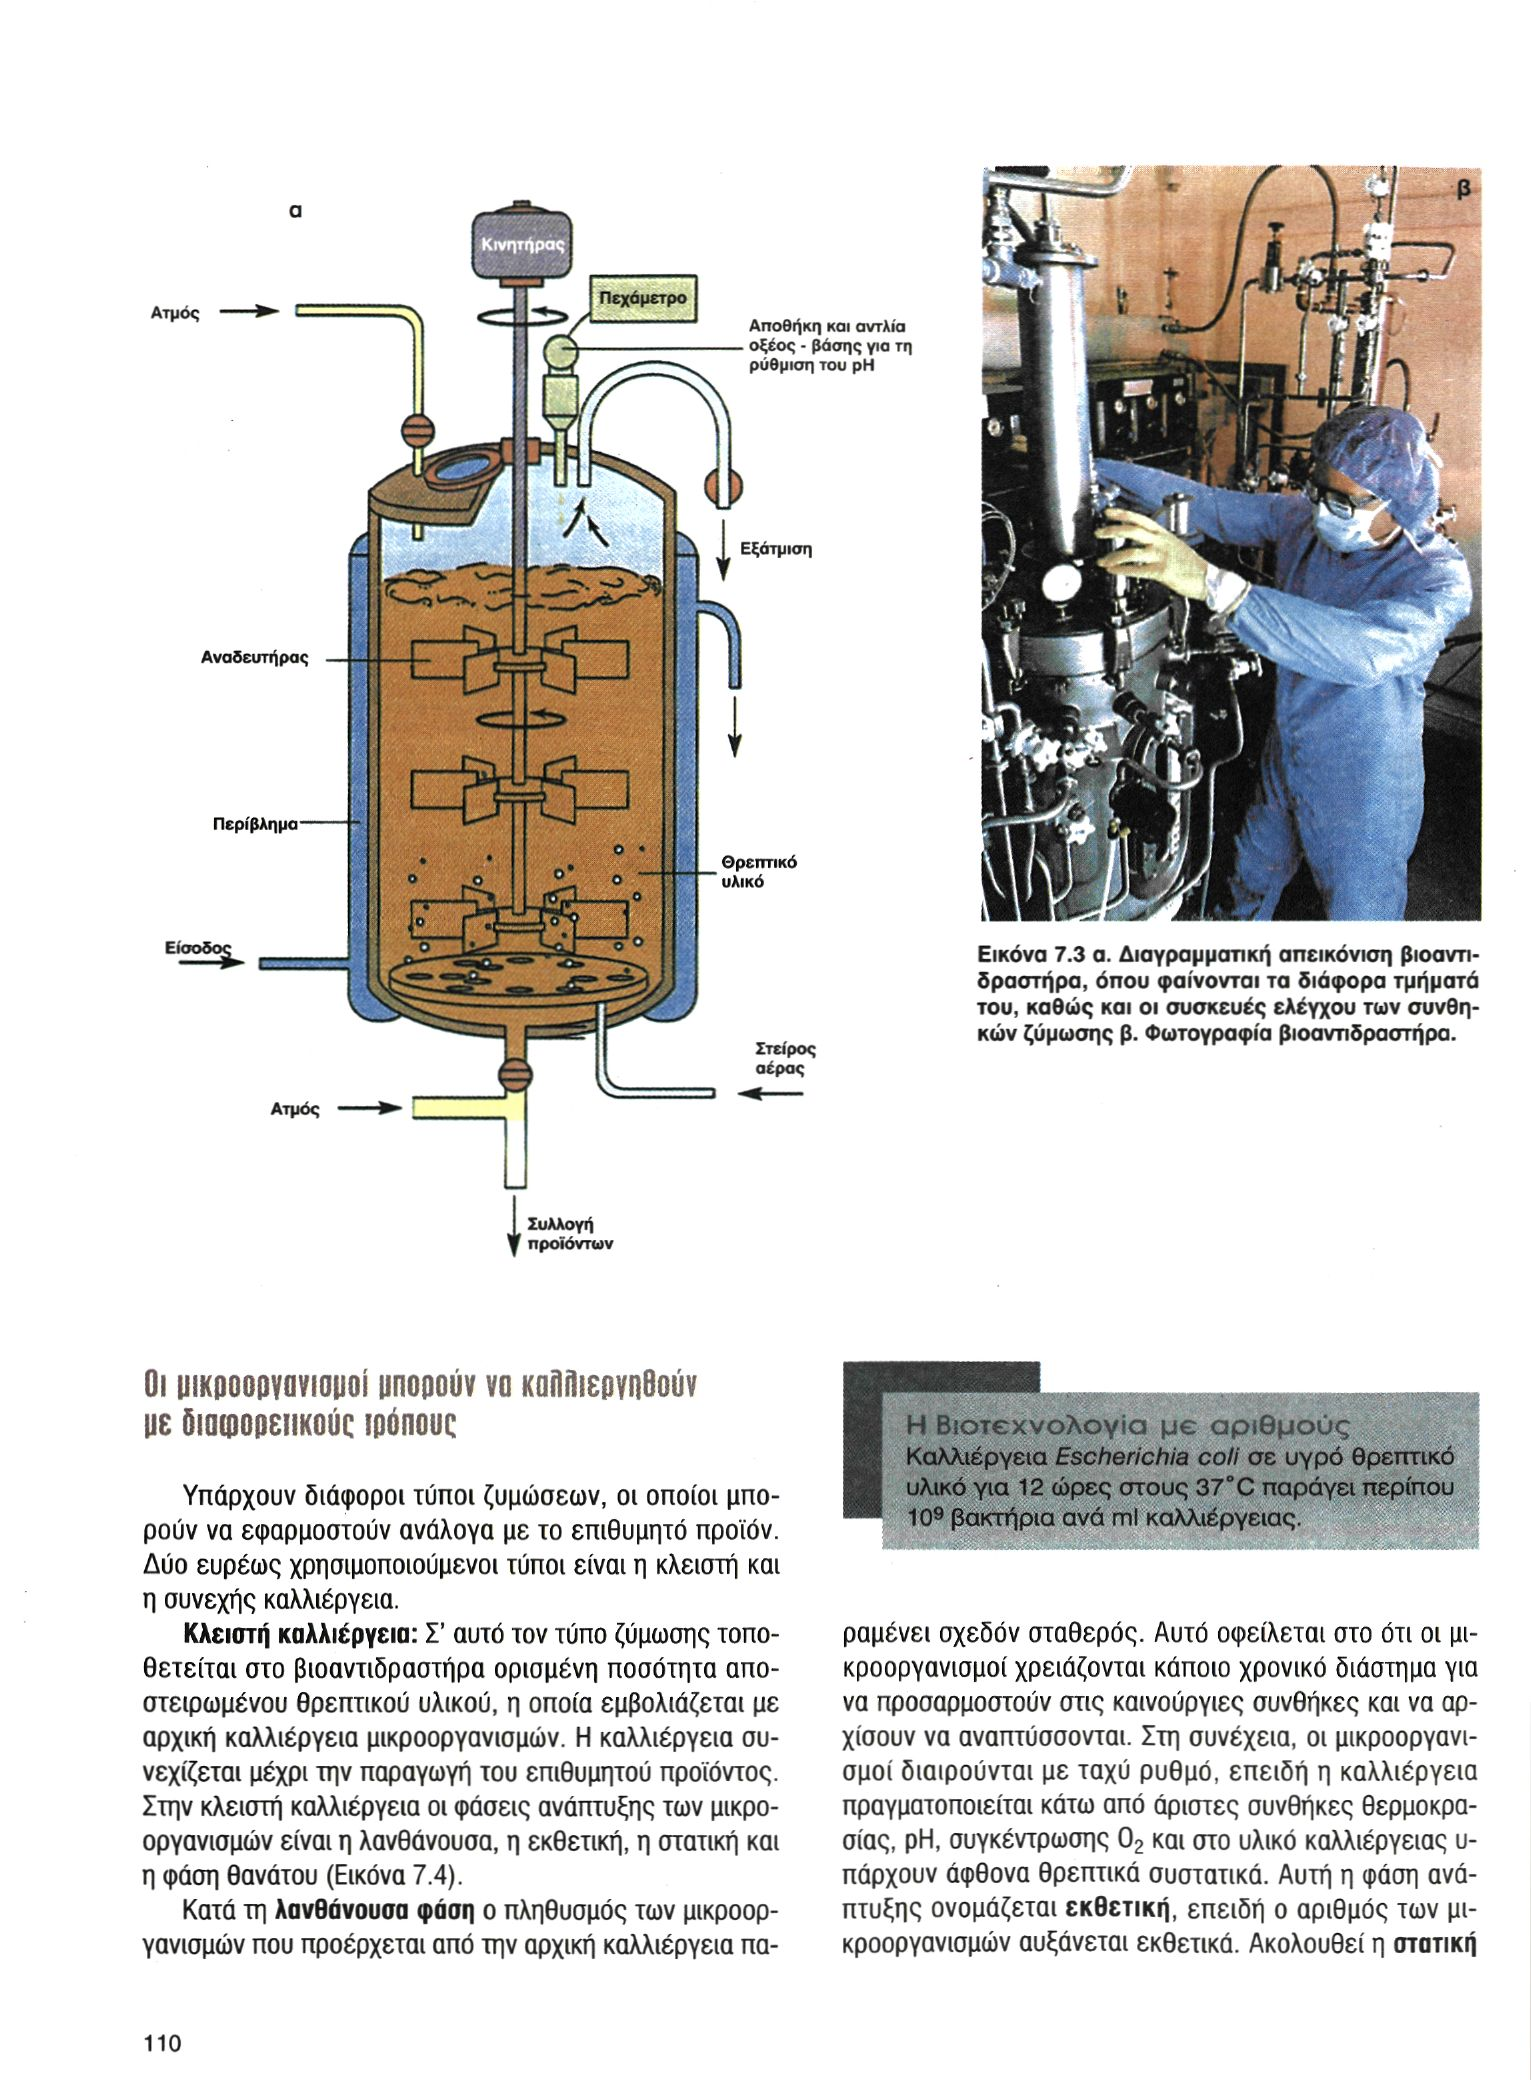 Εικόνα 7.3 α. Διαγραμματική απεικόνιση βιοαντιδραστήρα, όπου φαίνονται τα διάφορα τμήματά του, καθώς και οι συσκευές ελέγχου των συνθηκών ζύμωσης β. Φωτογραφία βιοαντιδραστήρα.